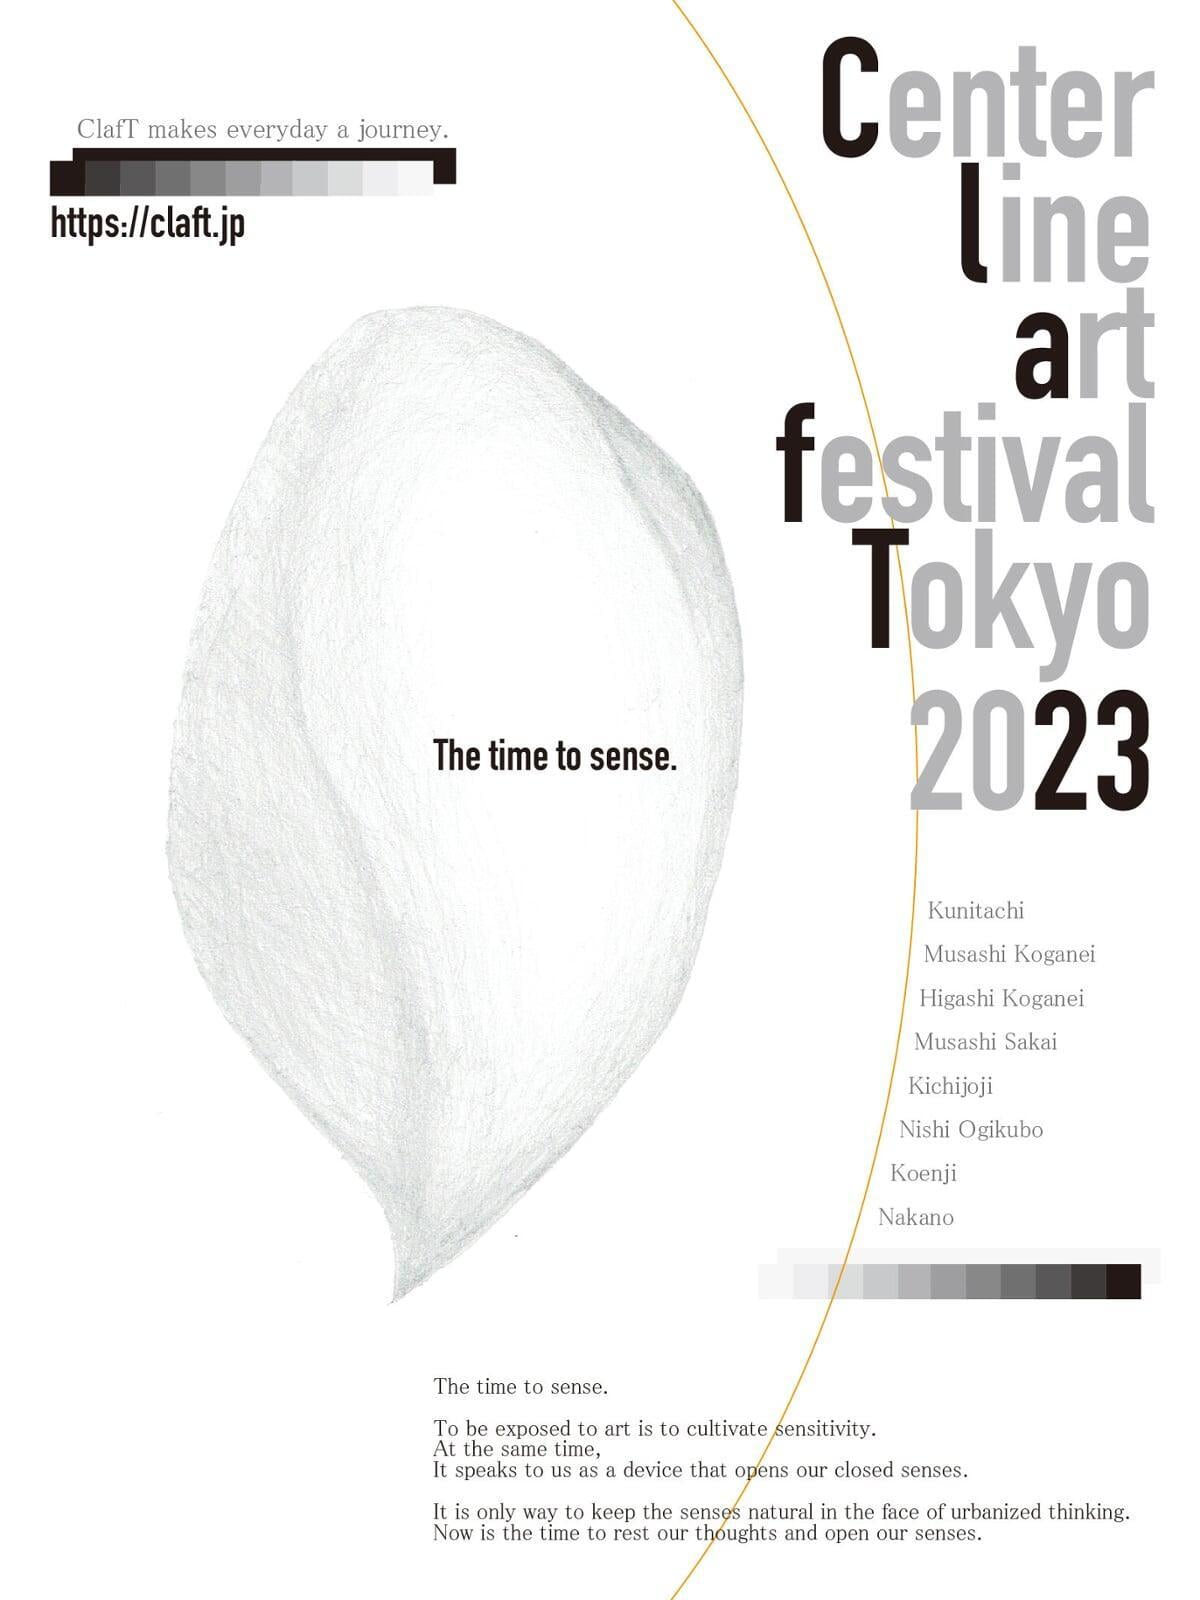 Center line art festival Tokyo 2023